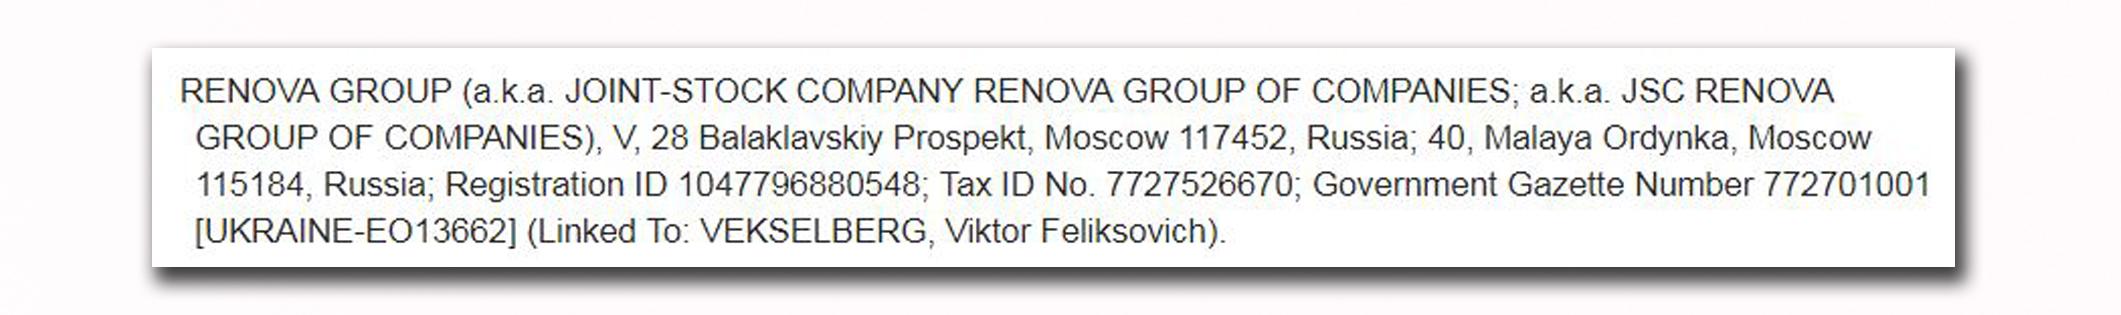 Le groupe Renova, aux nombreuses participations en Suisse, est directement visé par les sanctions américaines.